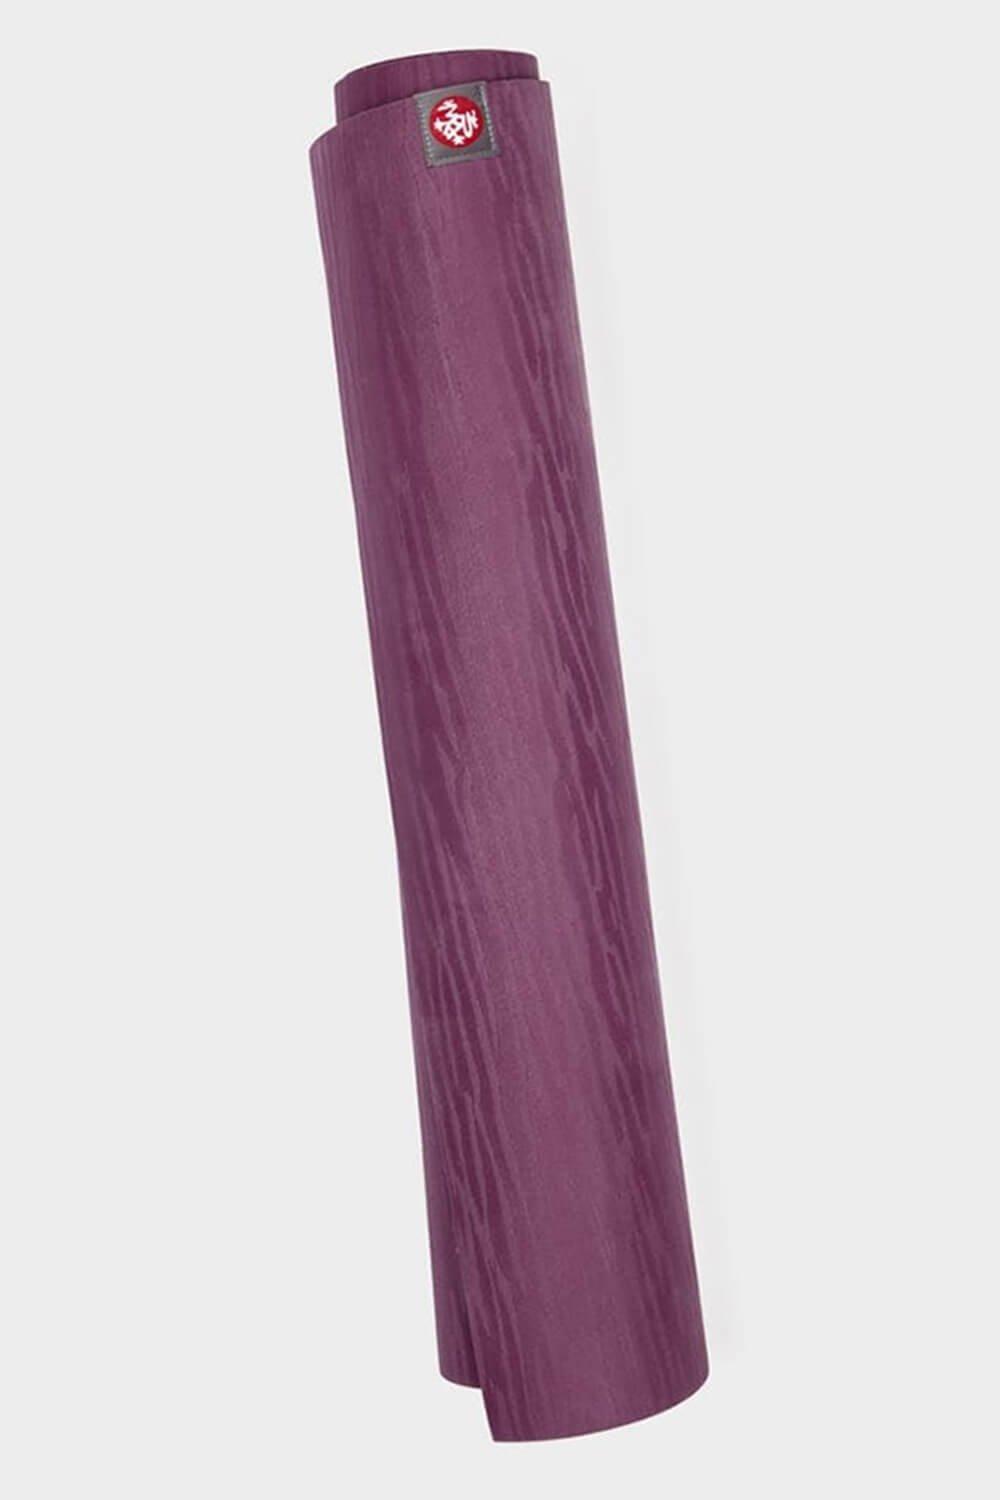 Коврик для йоги Eko Lite 4 мм Manduka, фиолетовый